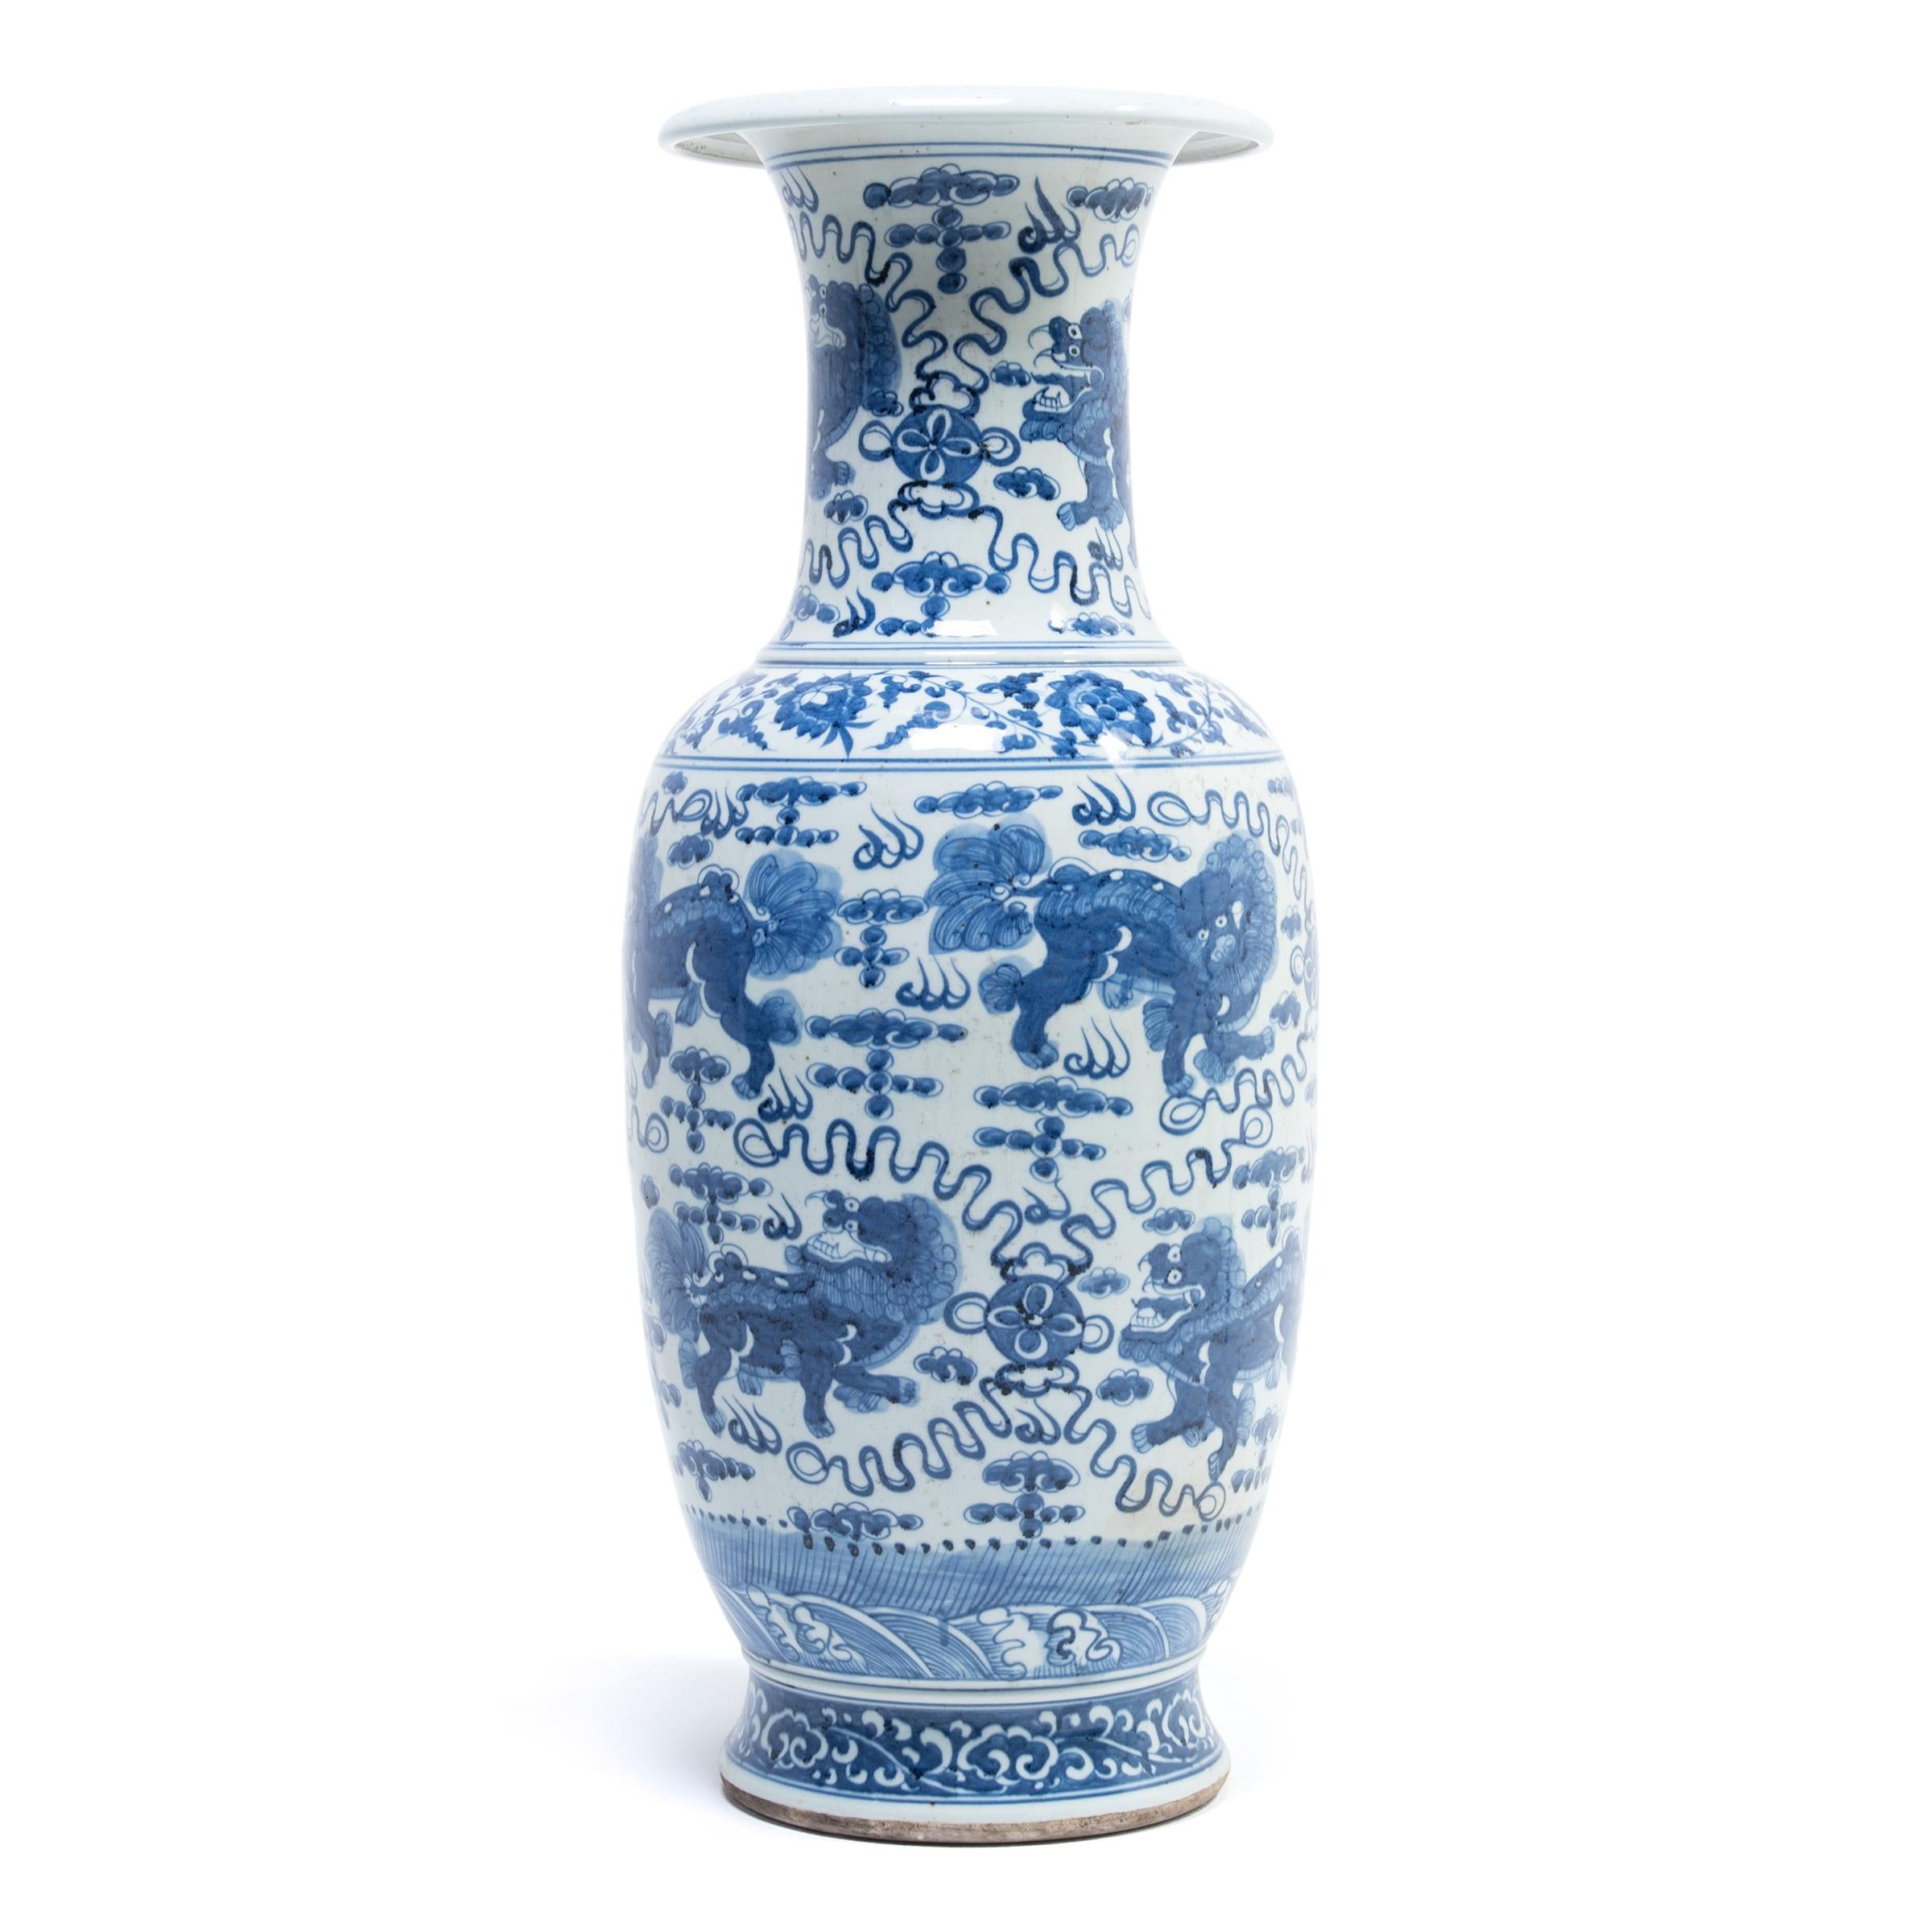 Eine Parade von Qilin, chinesischen Fabelwesen, die Großartigkeit, Freude und Wohlwollen symbolisieren, marschiert um diese handbemalte Porzellanfächer-Vase. Es ist ein wunderbares Beispiel für zeitgenössisches chinesisches blau-weißes Porzellan,